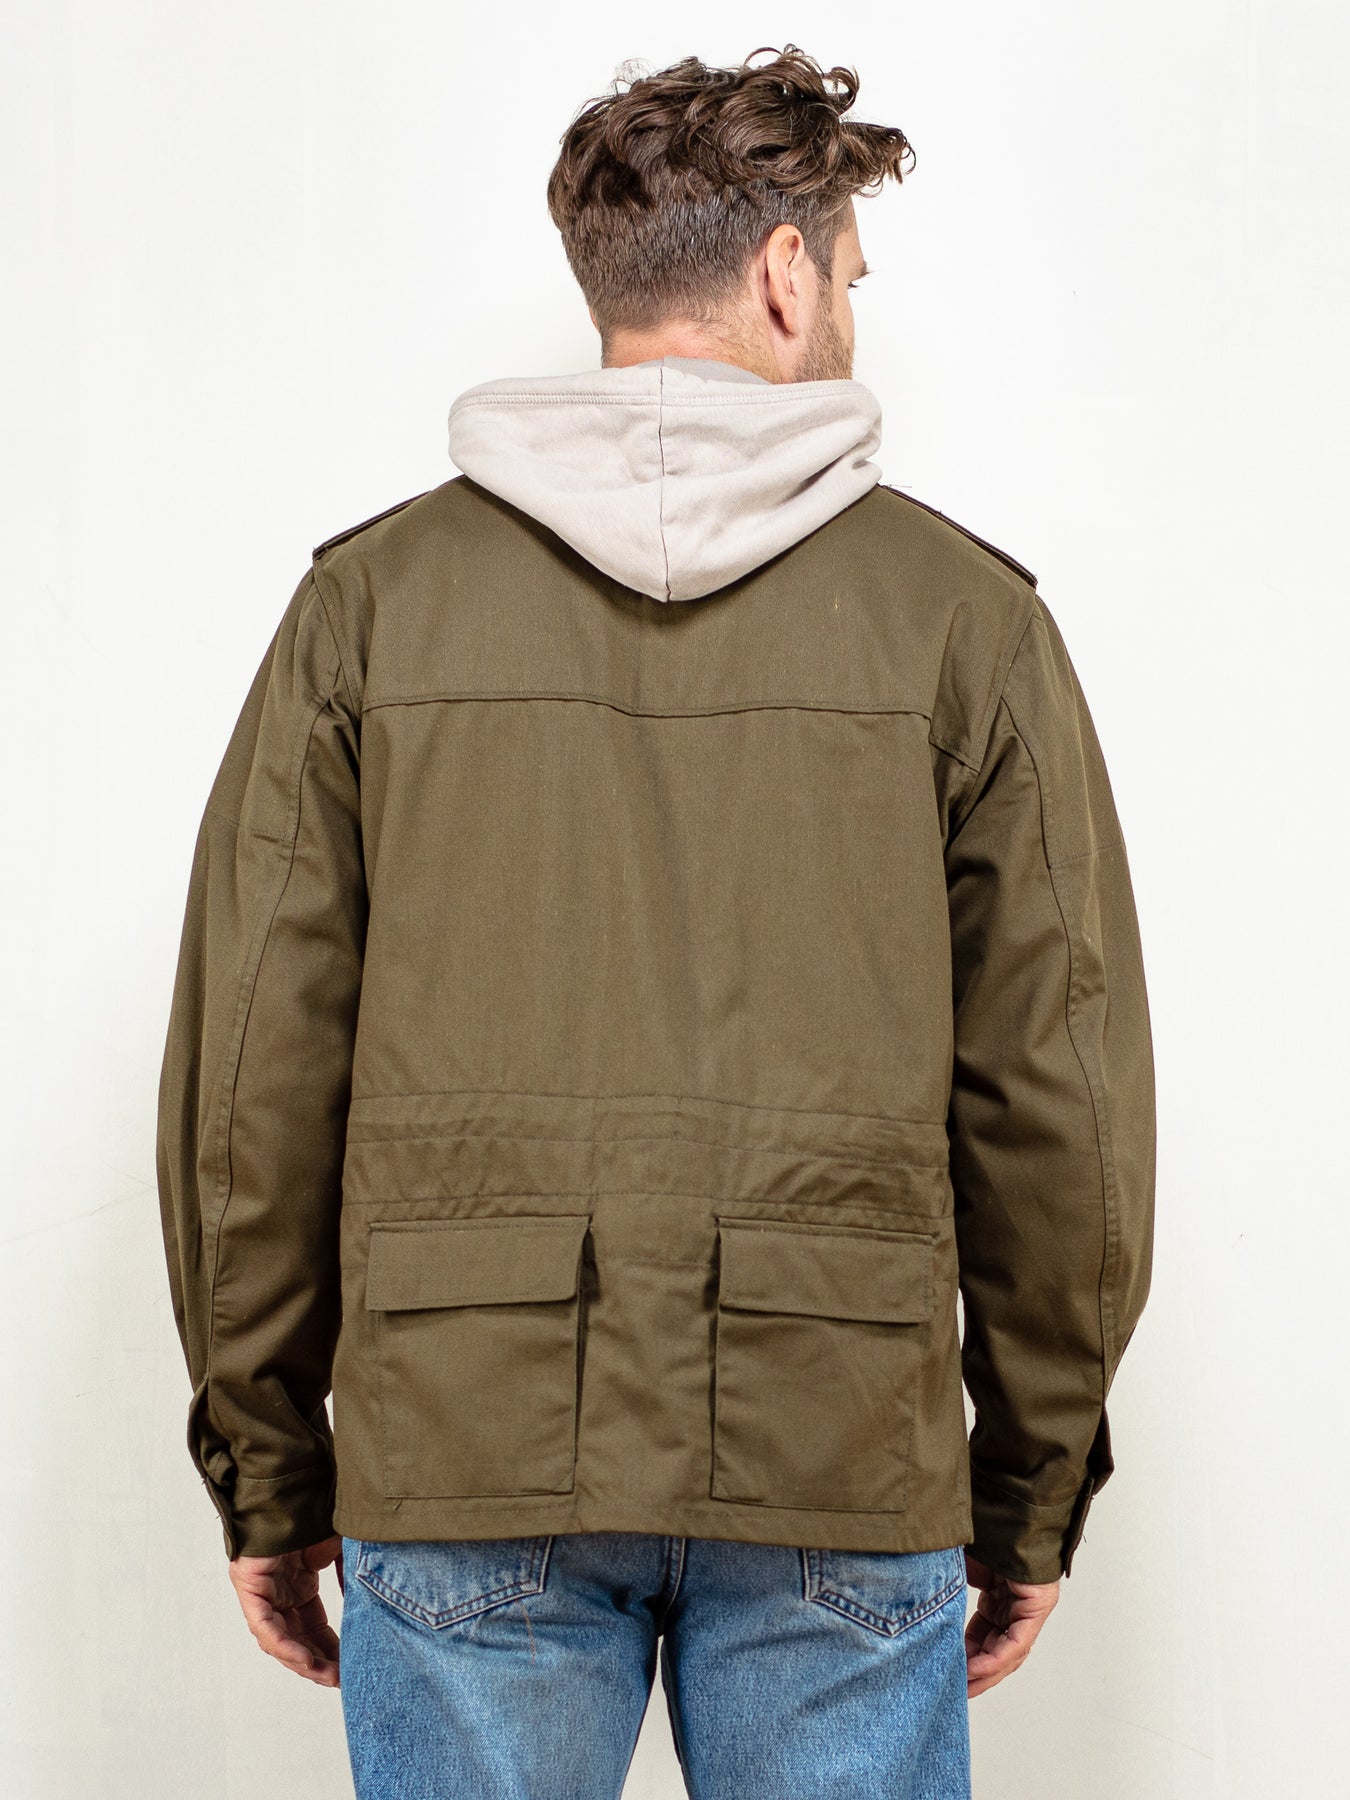 Jackets & Coats | Military Camouflage Utility Jacket | Poshmark